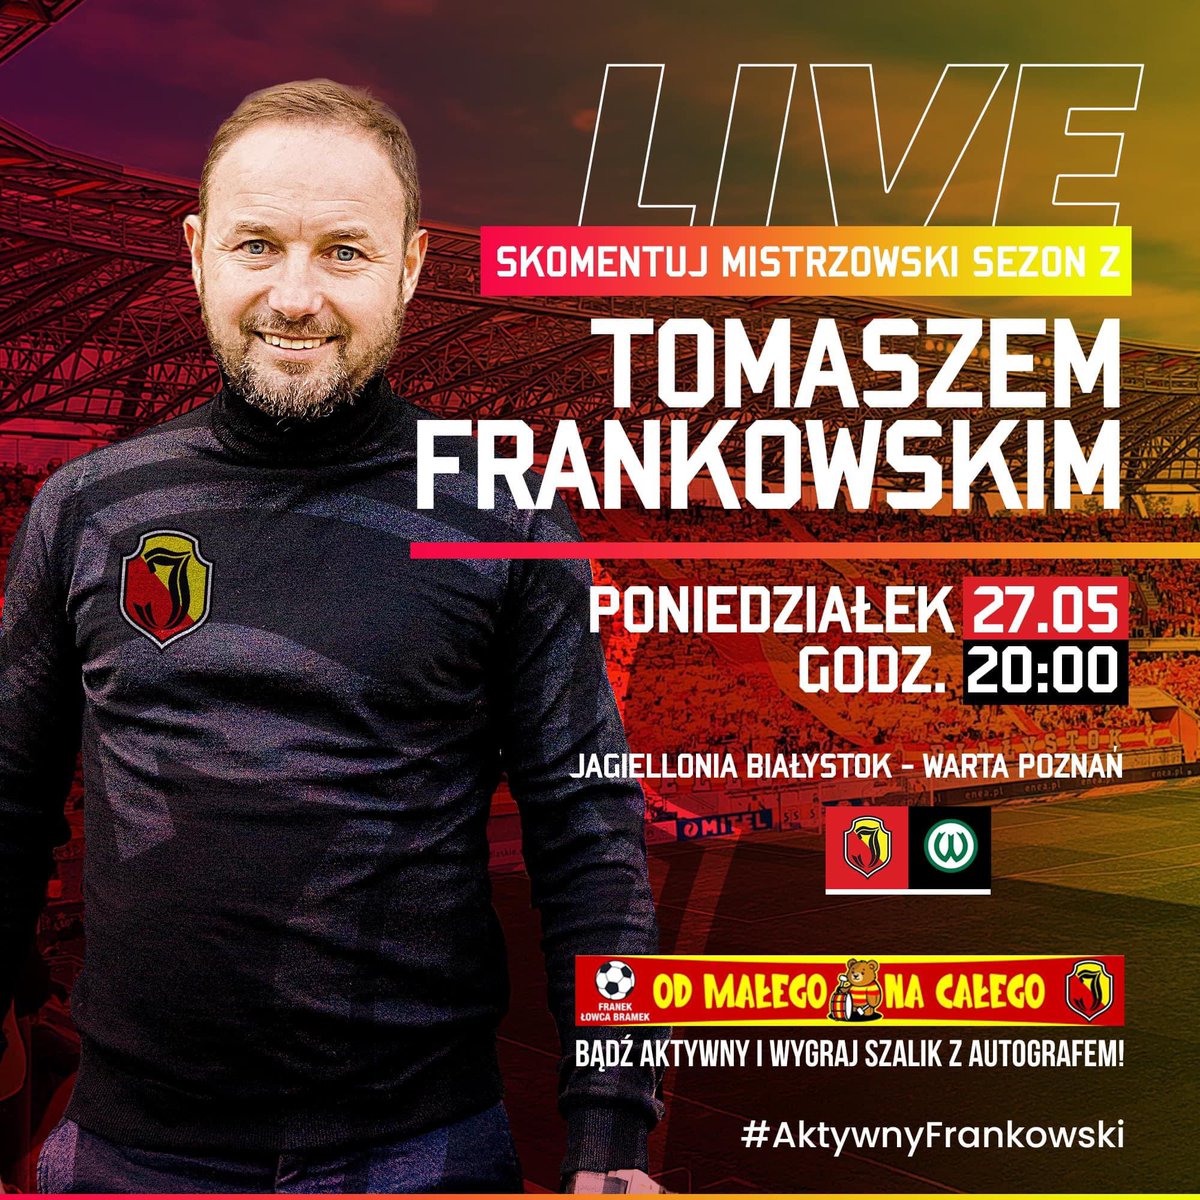 🎥 Już 27 maja o godz. 20:00 zapraszam na spotkanie live! Wspólnie skomentujemy mistrzowski sezon i podzielimy się spostrzeżeniami. Dołączcie do dyskusji. Do zobaczenia! ✋ #AktywnyFrankowski PS Transmisja na Facebooku!